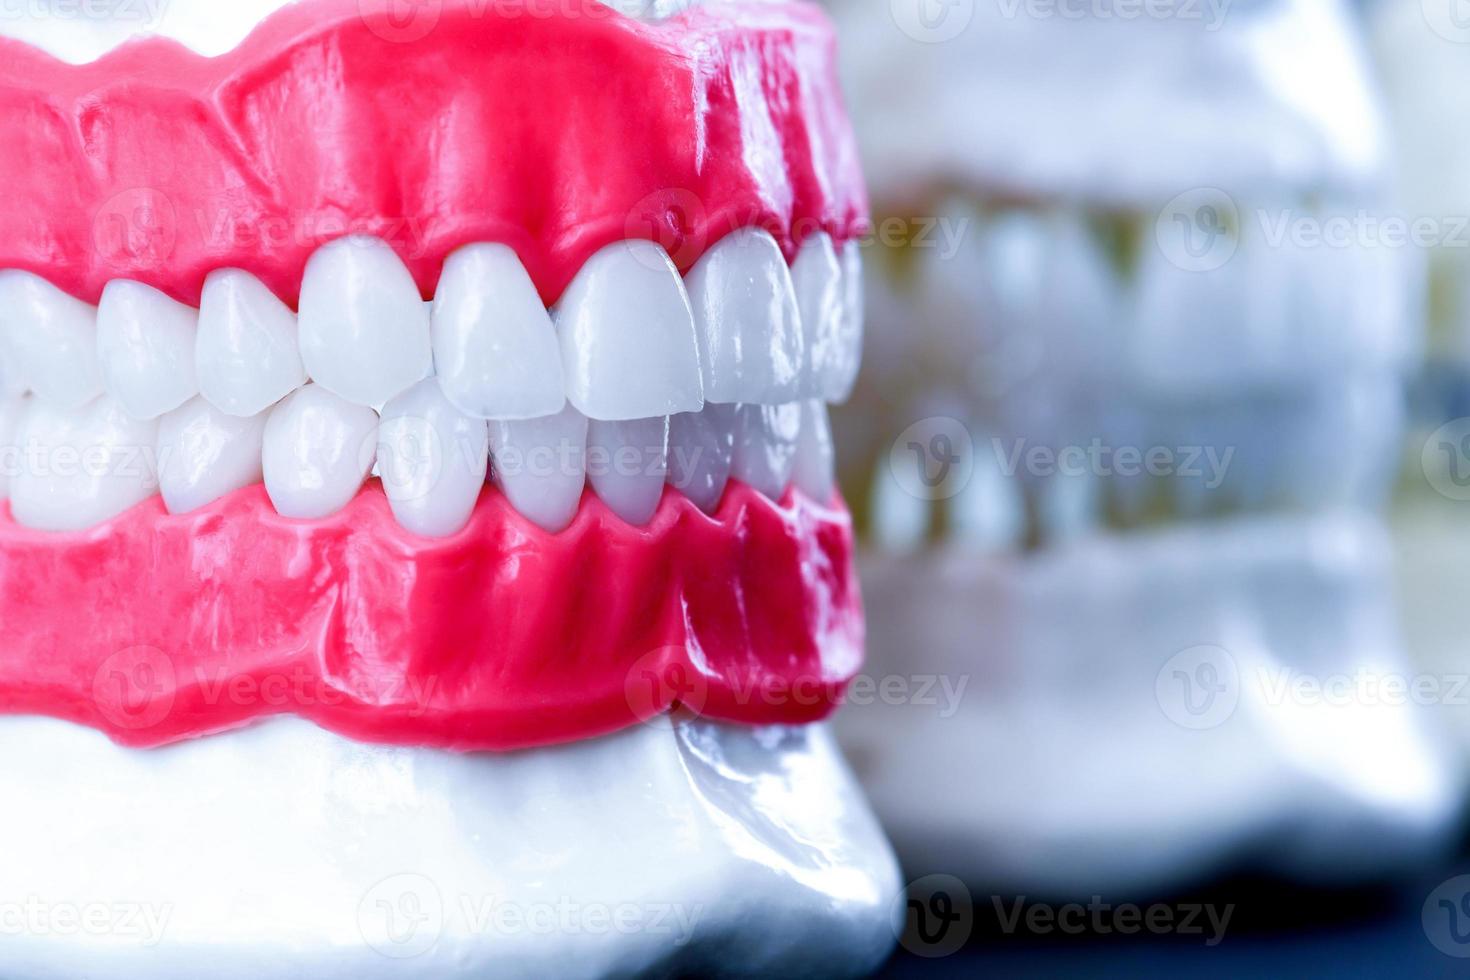 menselijk kaken met tanden en tandvlees anatomie modellen foto